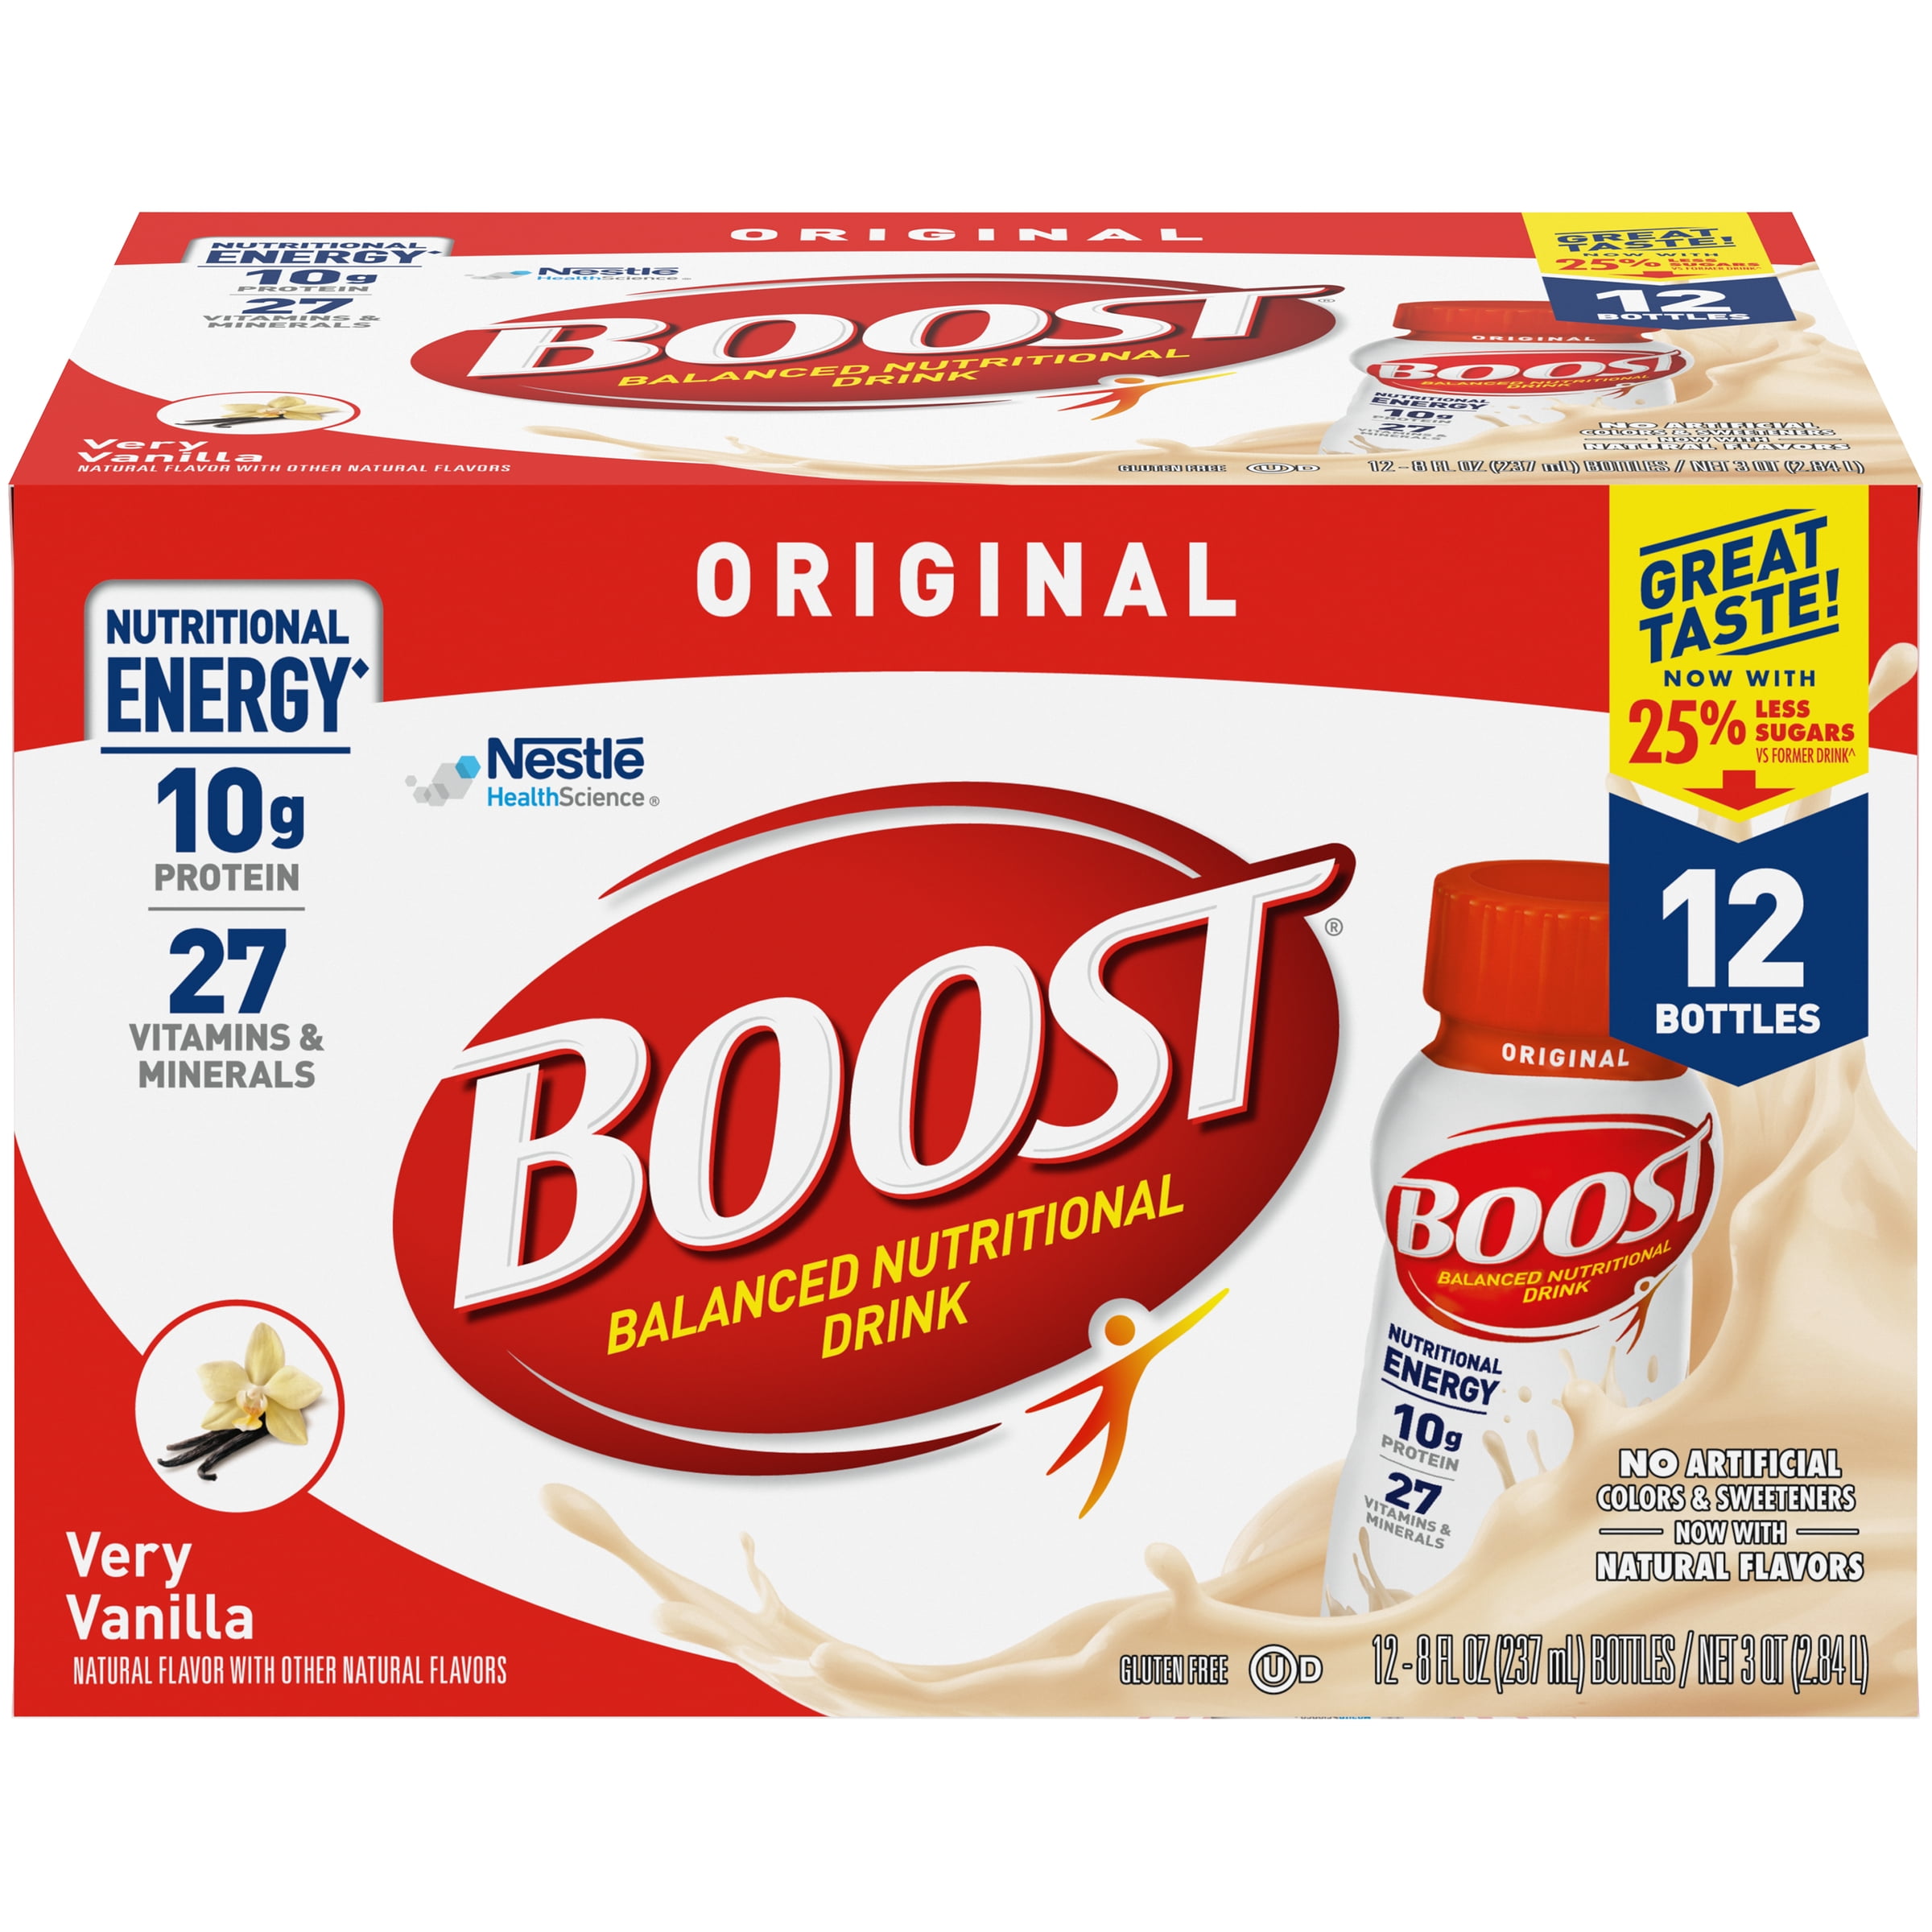 BOOST Original Nutritional Drink, Very Vanilla, 10g Protein, 12 - 8 fl oz Bottles